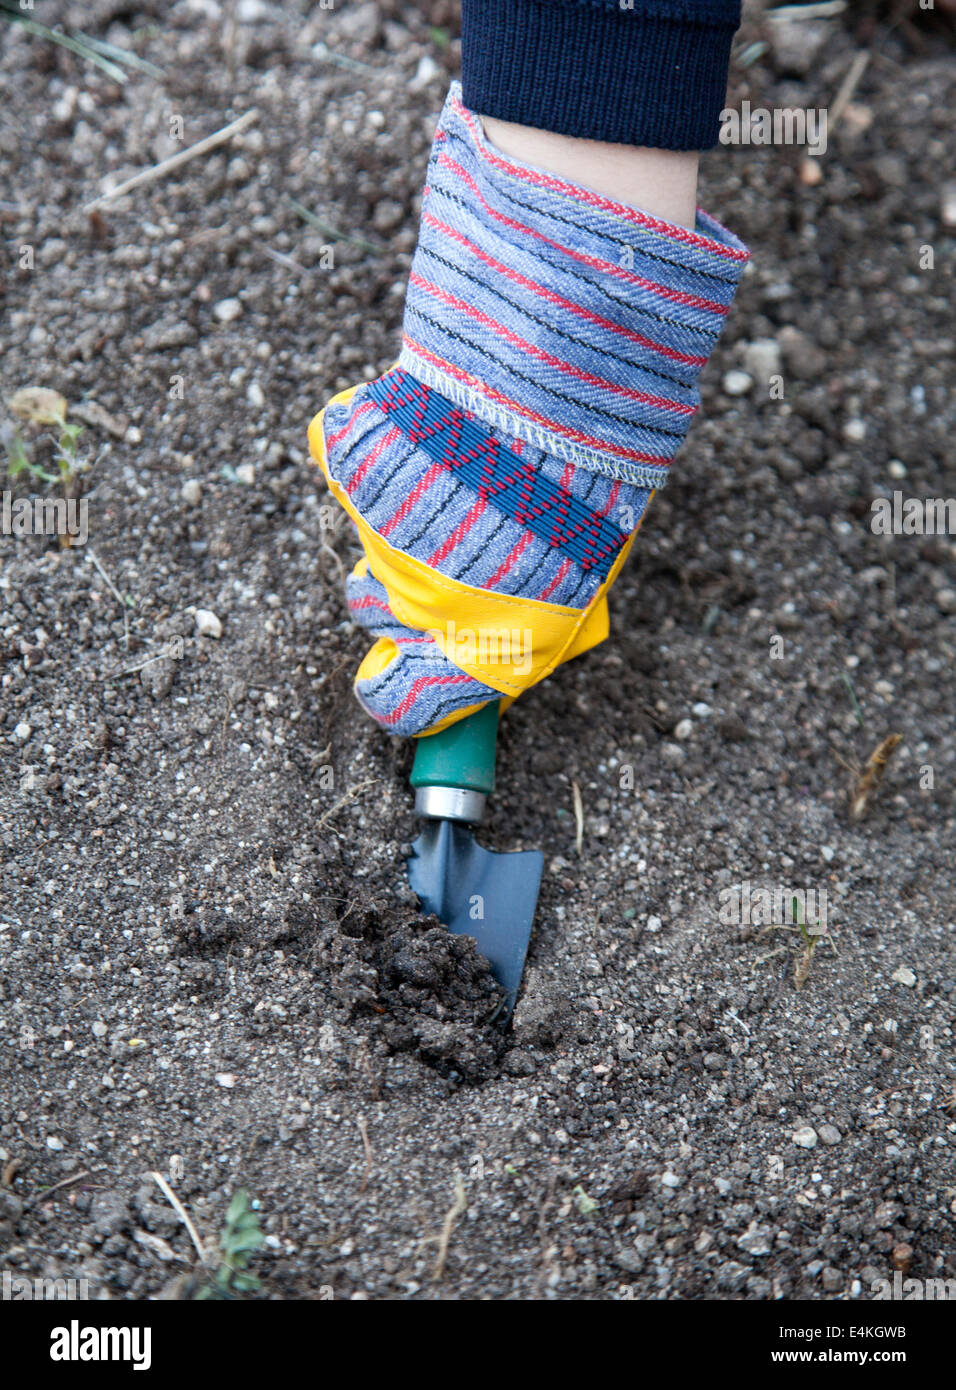 Una mano con guante para niños con una pequeña pala de jardinería. Foto de stock